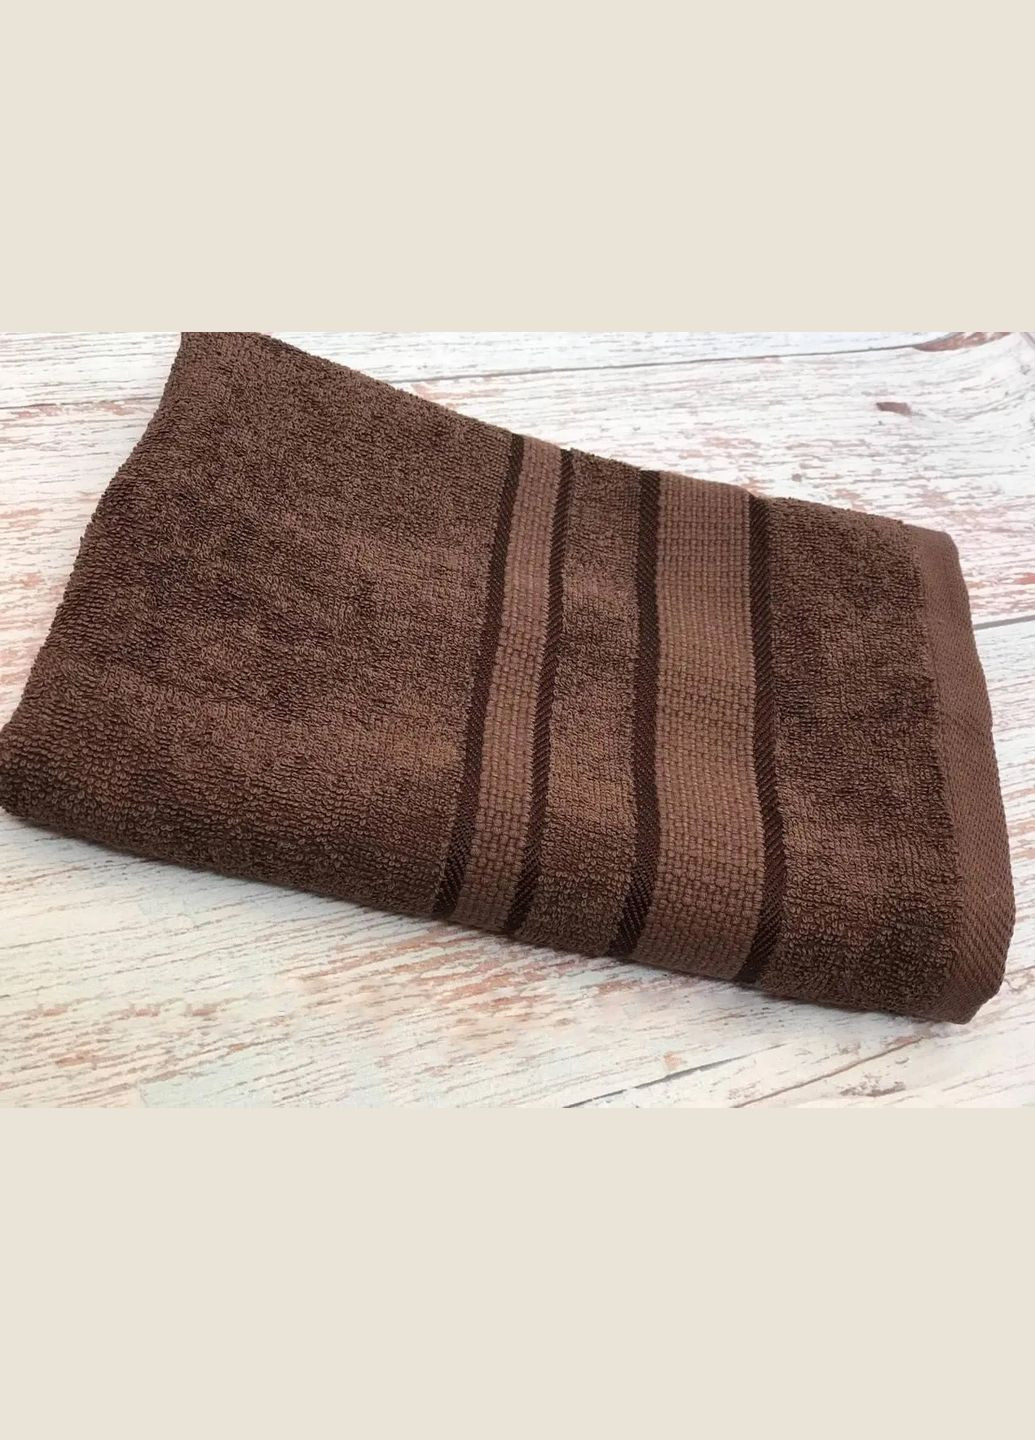 Fadolli Ricci полотенце махровое — шоколад 70*140 (400 г/м²) коричневый производство -